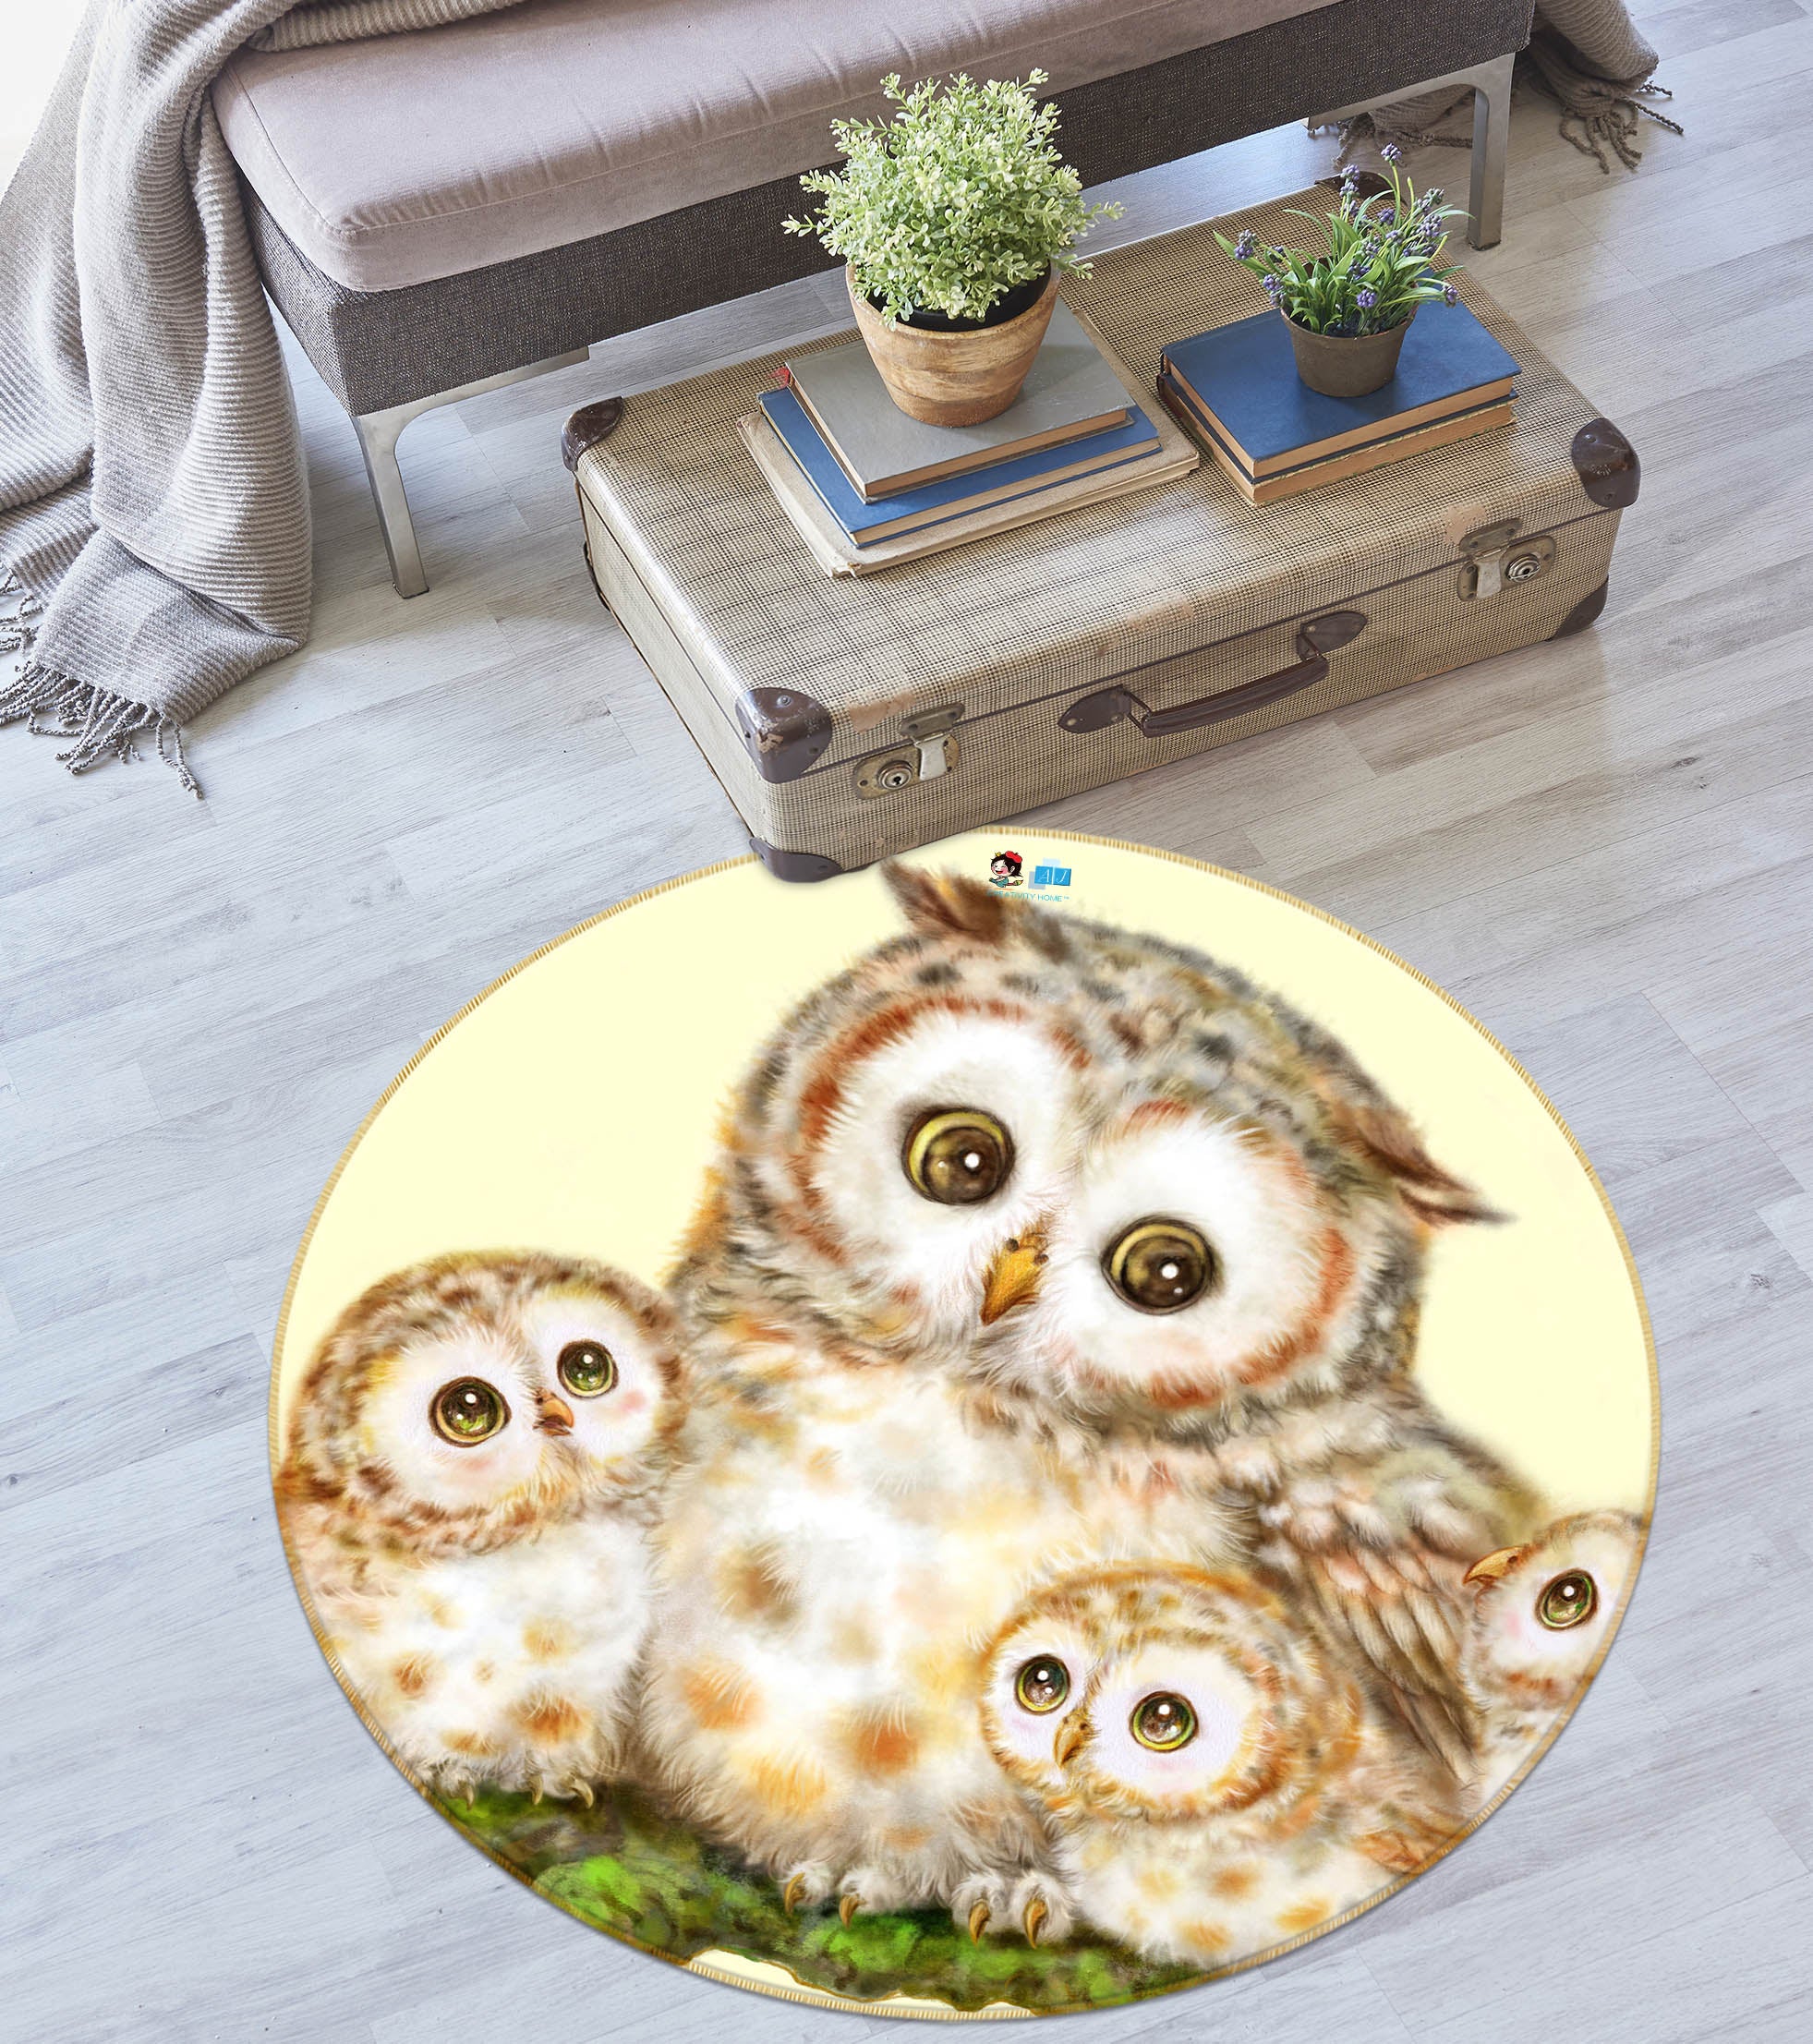 3D Cute Owl Moon 6039 Kayomi Harai Rug Round Non Slip Rug Mat